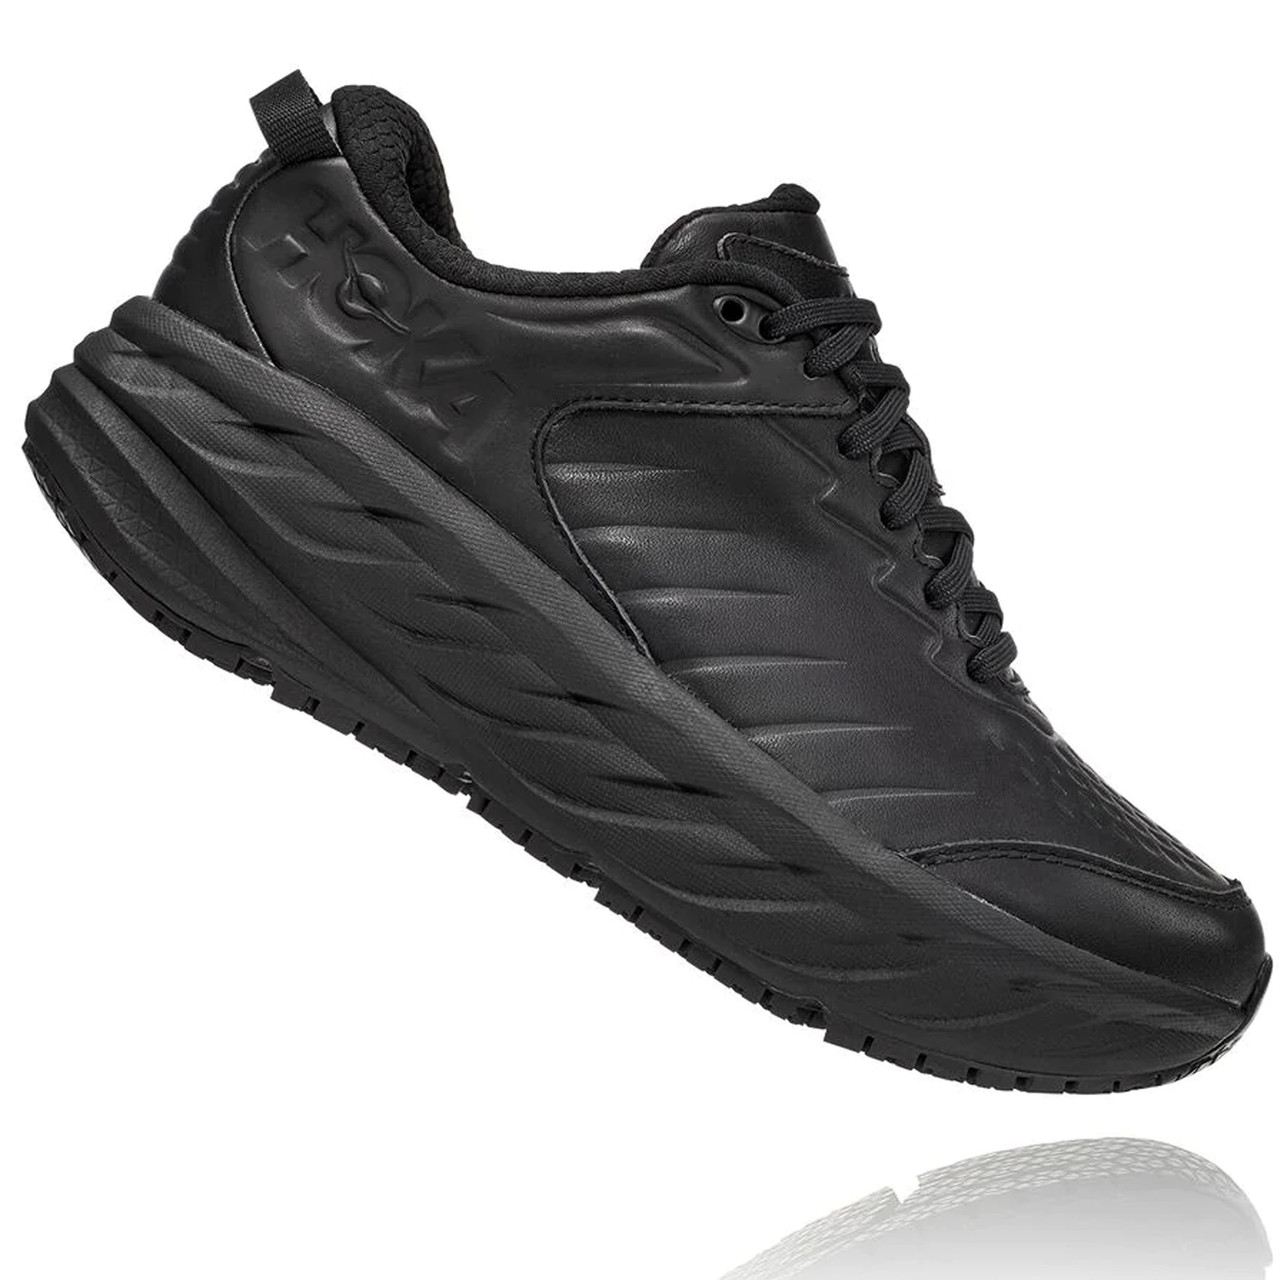 black slip resistant shoes